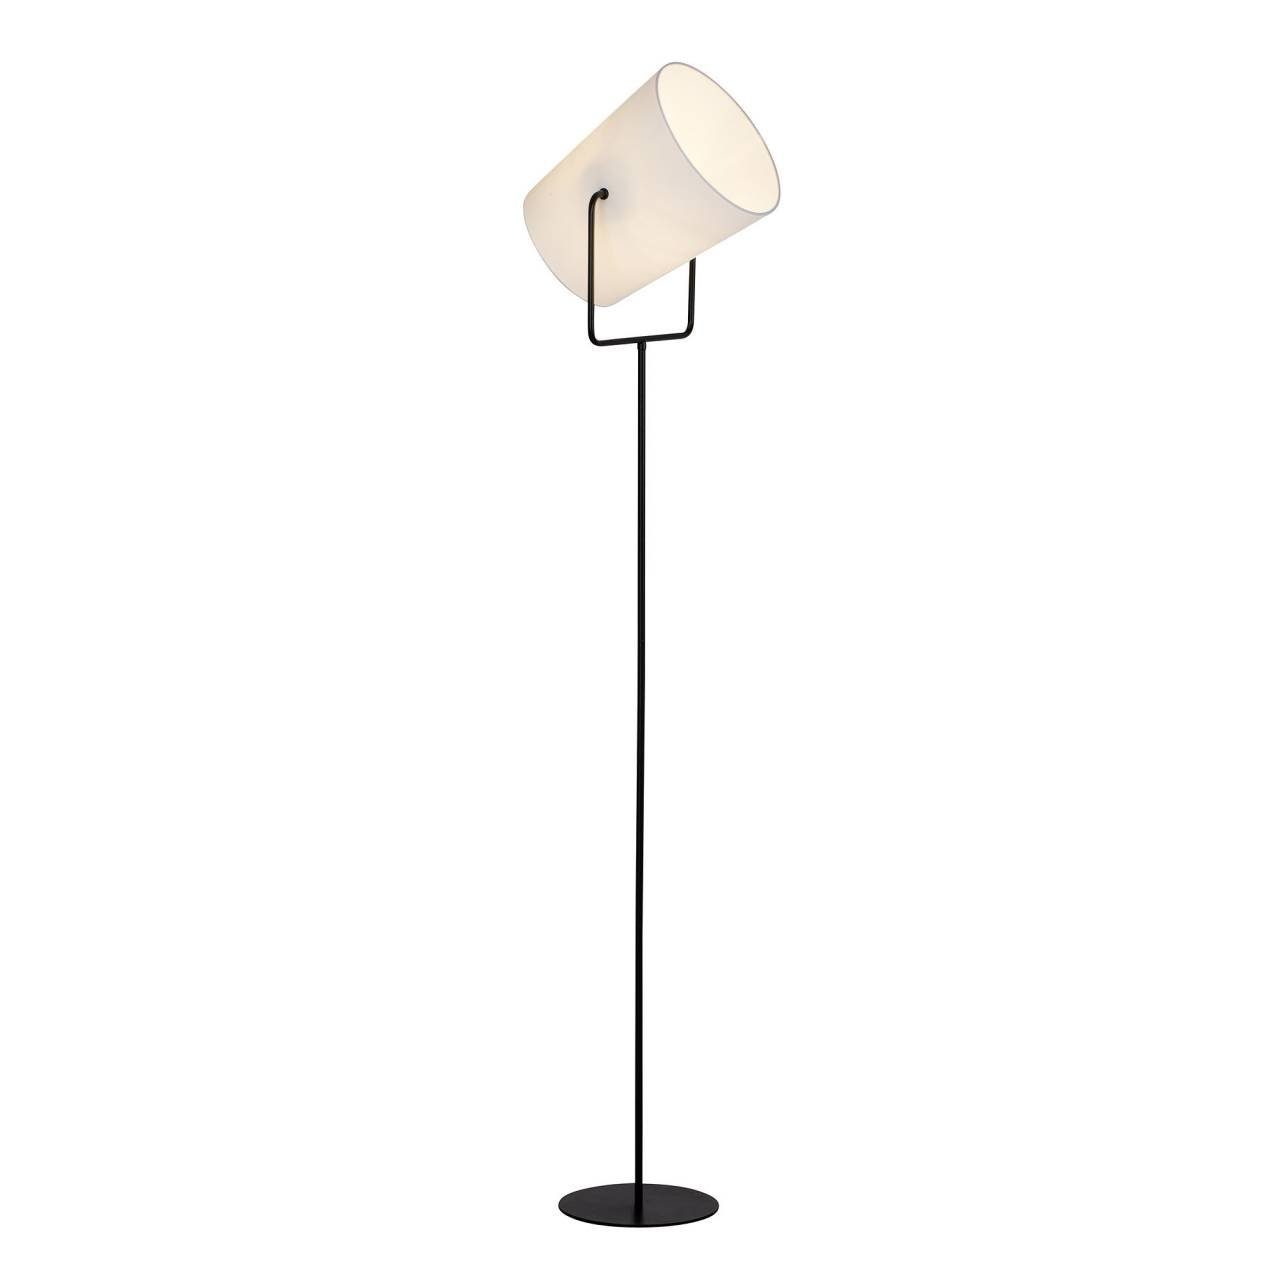 Brilliant Stehlampe Bucket, Lampe Bucket 1x 1flg Standleuchte E27, A60, schwarz/weiß geeign 60W